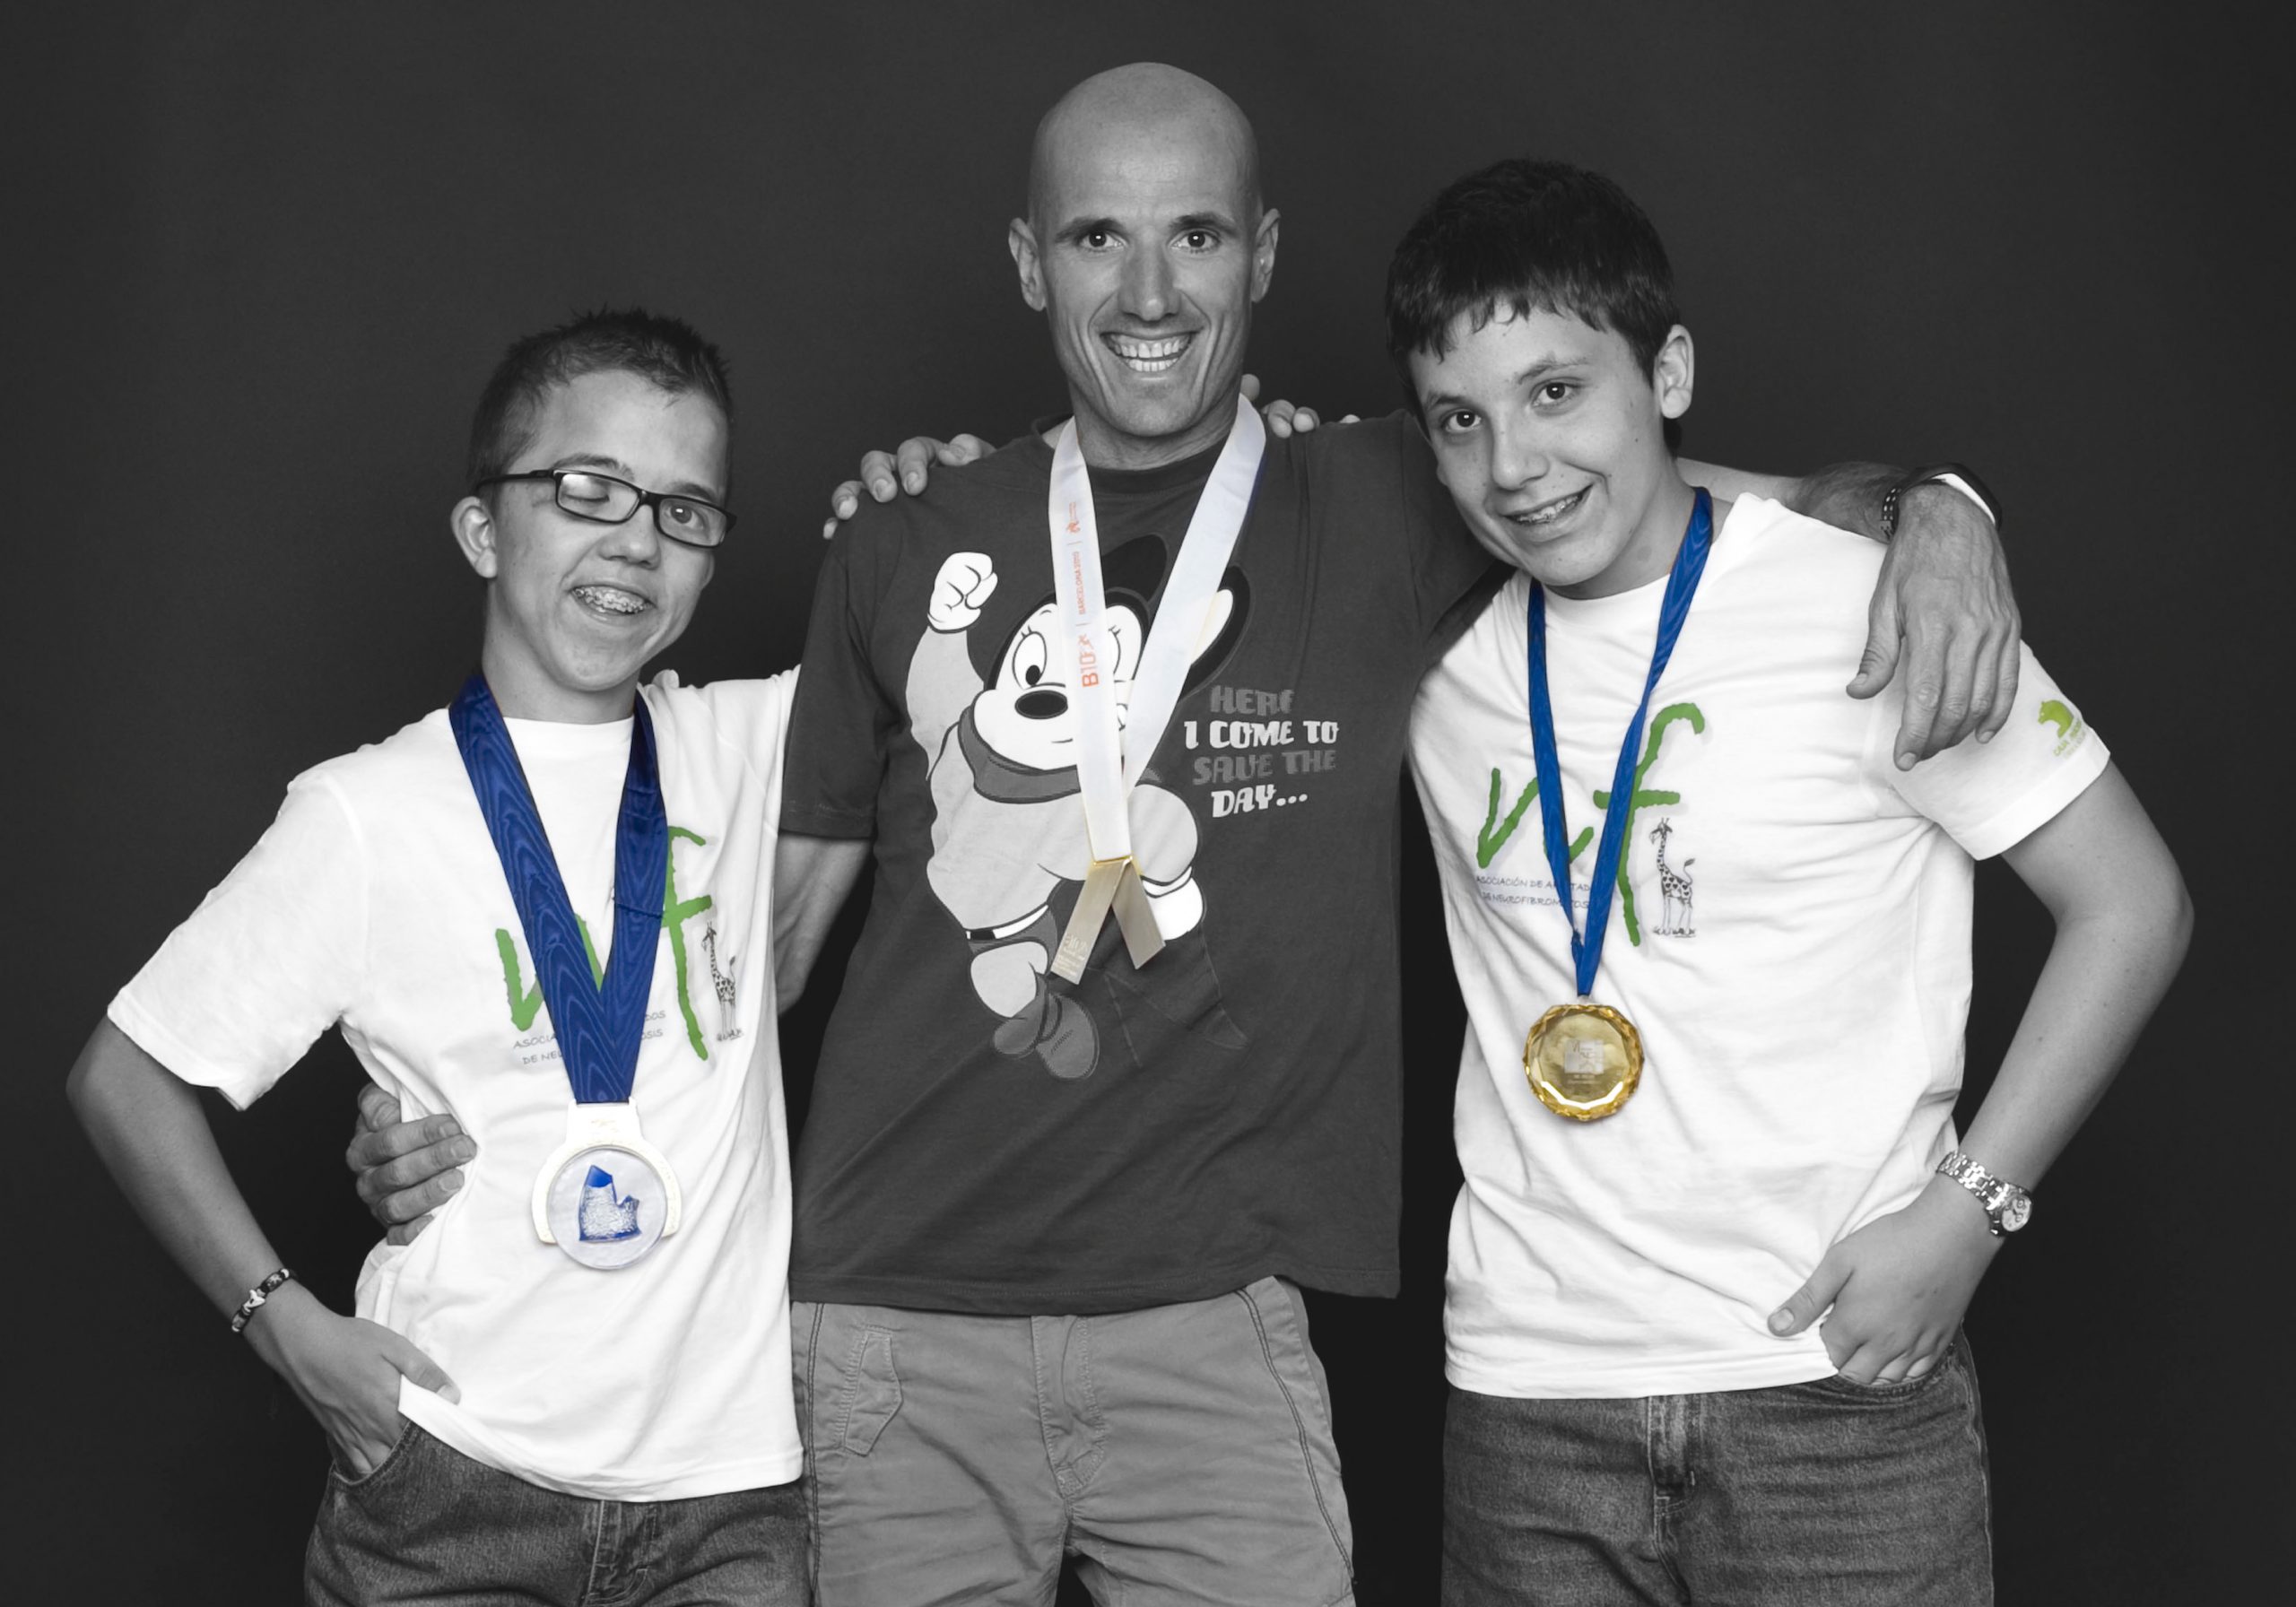 El atleta Chema Martínez posando con dos jóvenes de la asociación AANF, mostrando sus respectivas medallas.